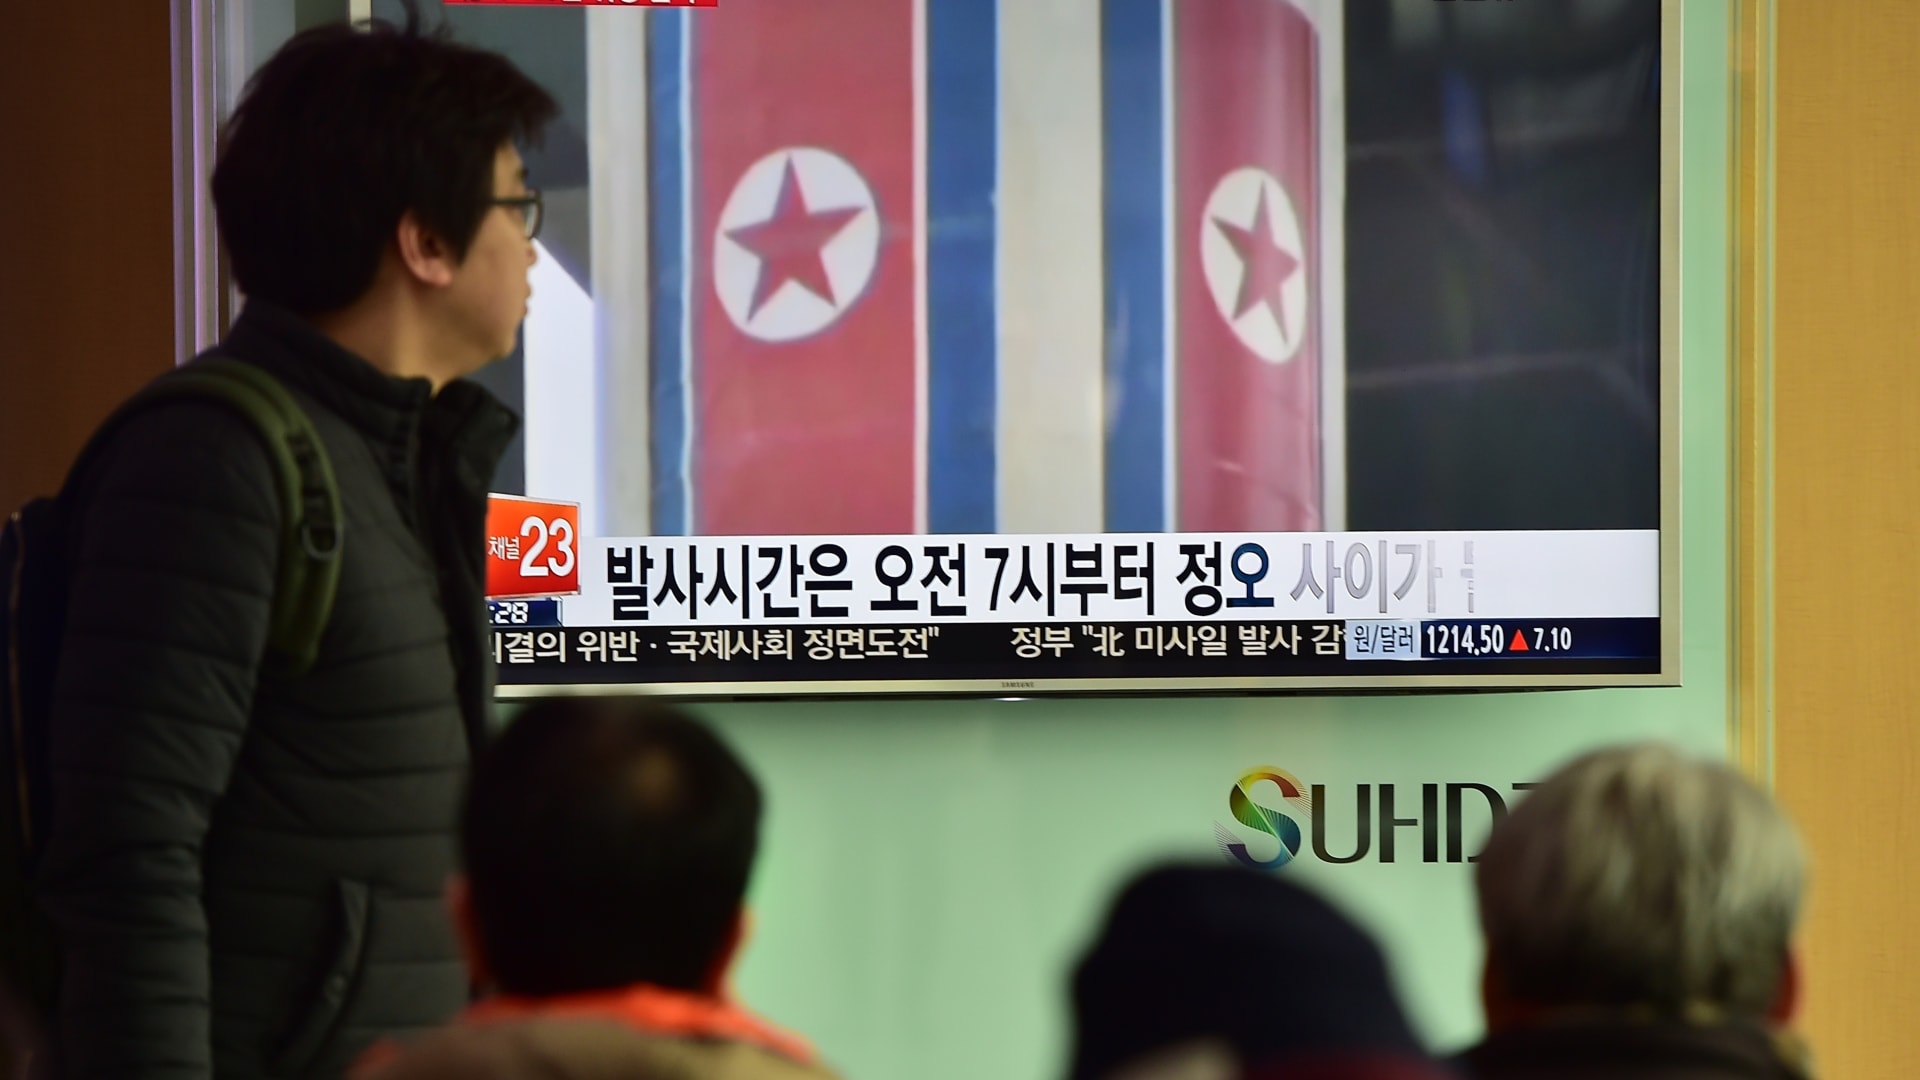 بالفيديو: مخاوف حول إطلاق كوريا الشمالية لصاروخ باليستي عابر للقارات